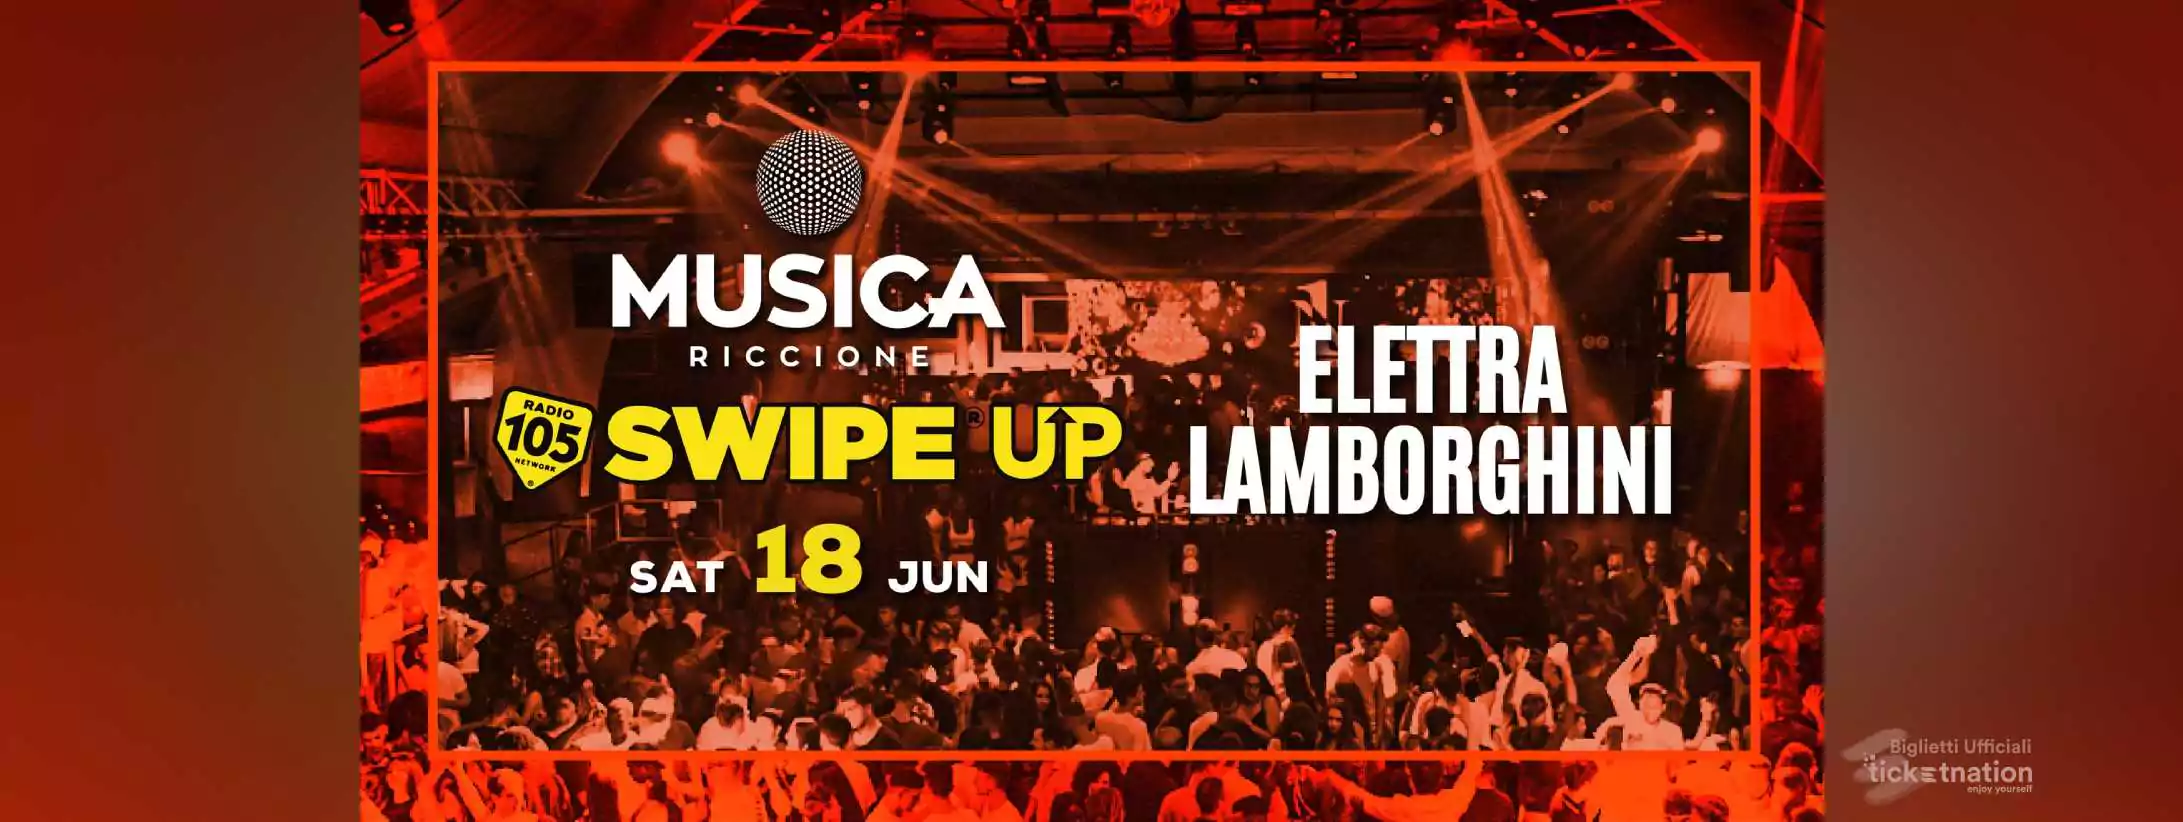 ELETTRA LAMBORGHINI @ Musica Riccione 105 Swip Up Sabato 18 Giugno 2022 •  Event Destination